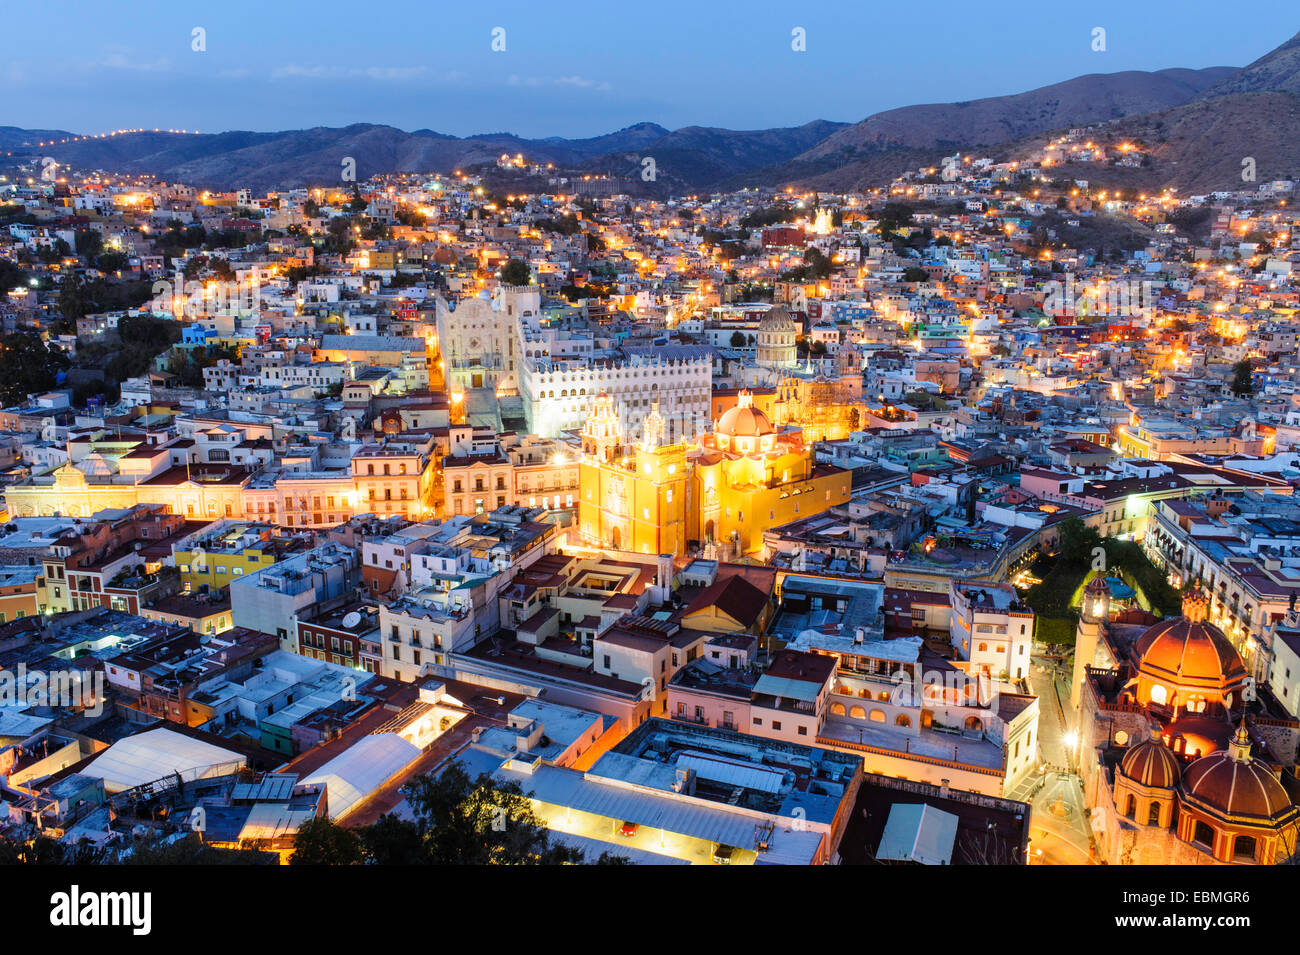 La città di Guanajuato la notte come visto da sopra. Foto Stock